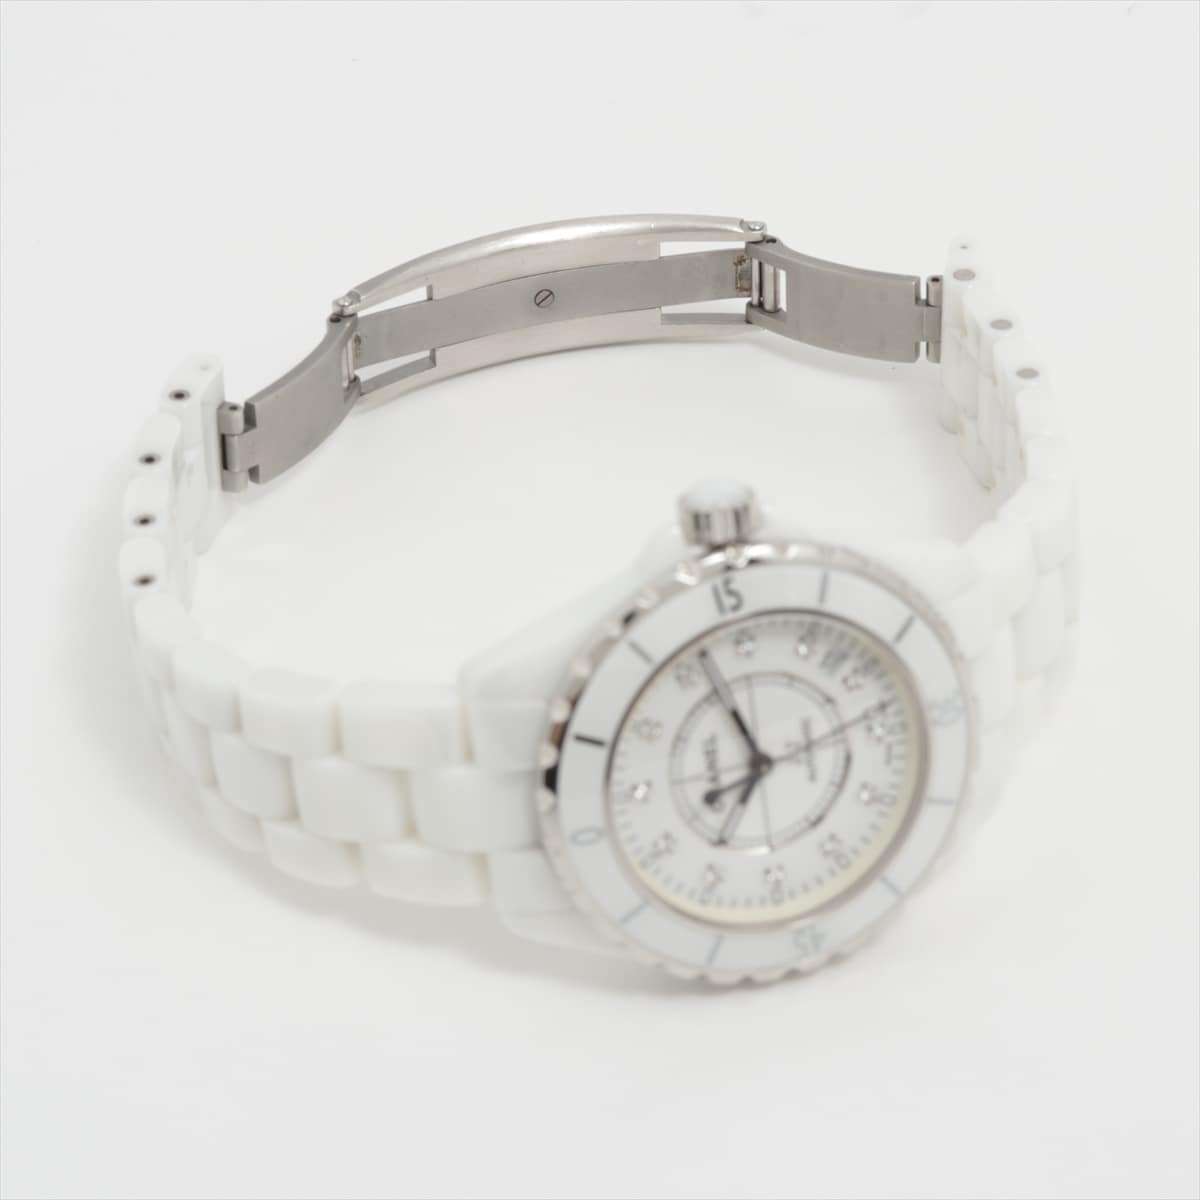 シャネル 腕時計美品  J12 H1629 白